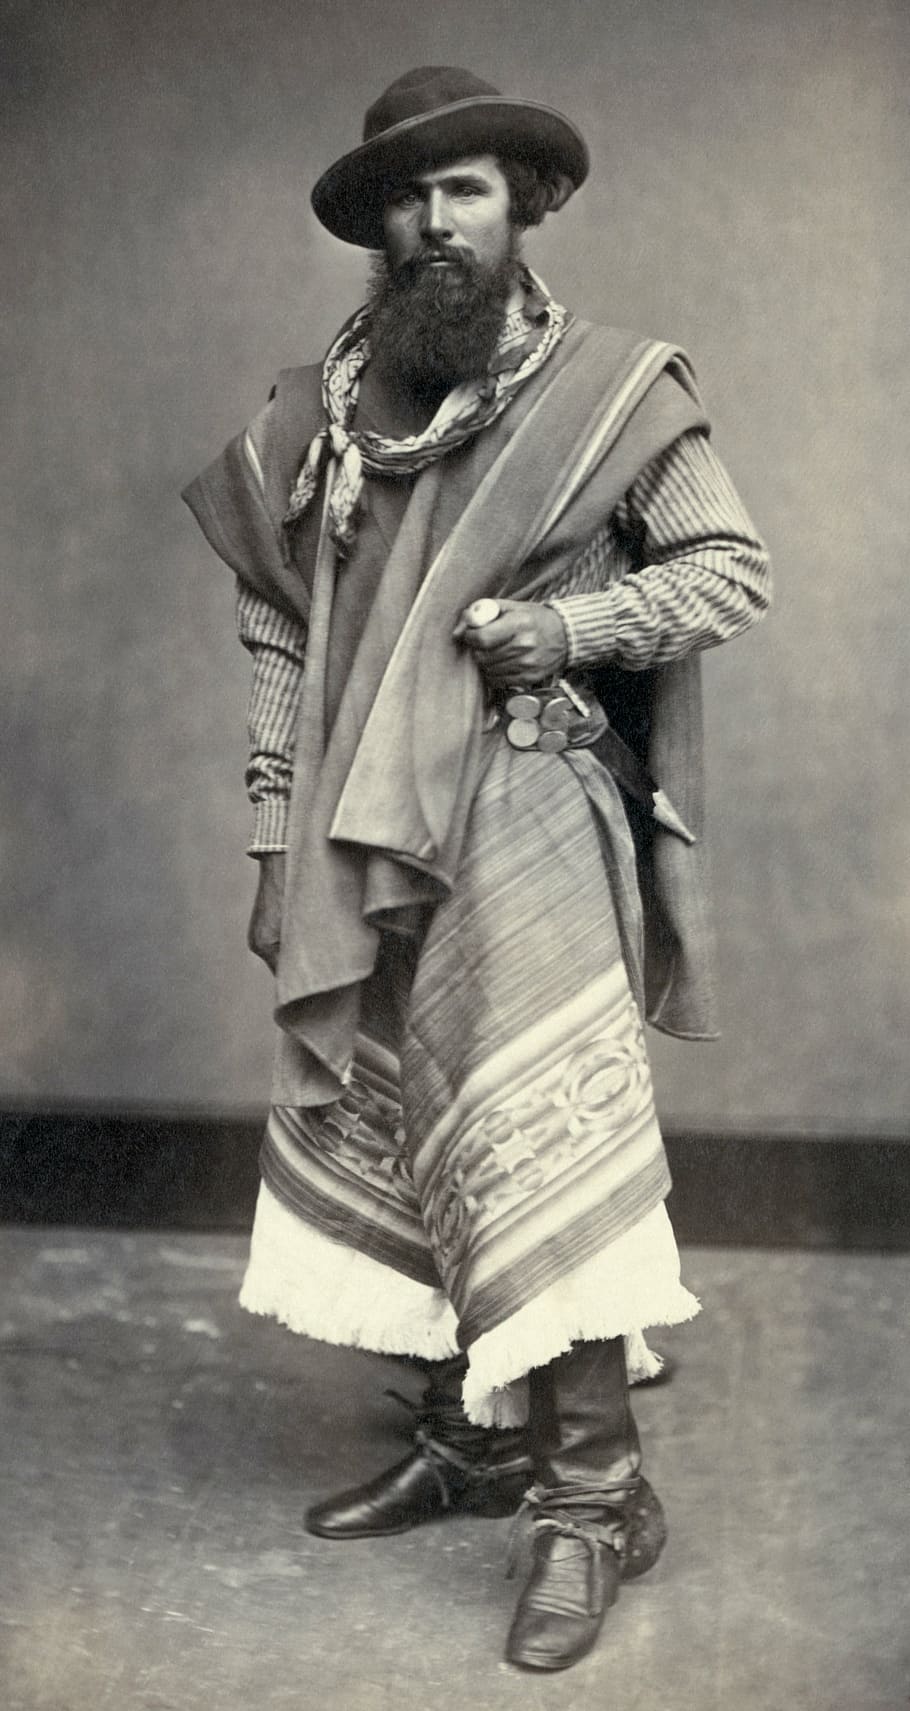 gaucho, indio, argentine, man, hitam dan putih, 1868, panjang penuh, pakaian, satu orang, rambut wajah